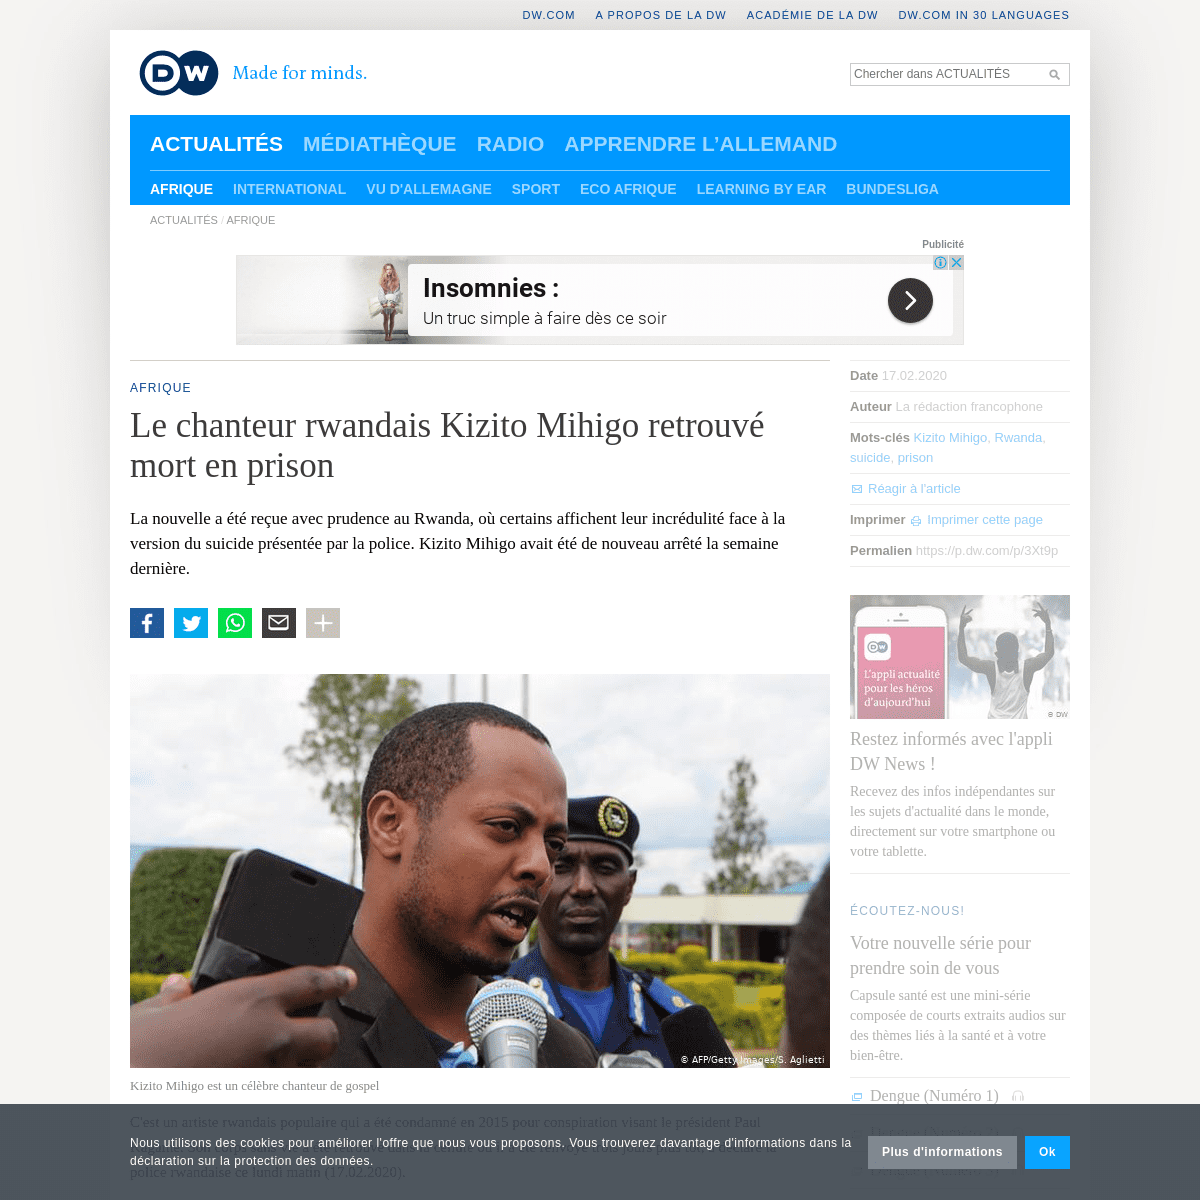 A complete backup of www.dw.com/fr/le-chanteur-rwandais-kizito-mihigo-retrouv%C3%A9-mort-en-prison/a-52405861